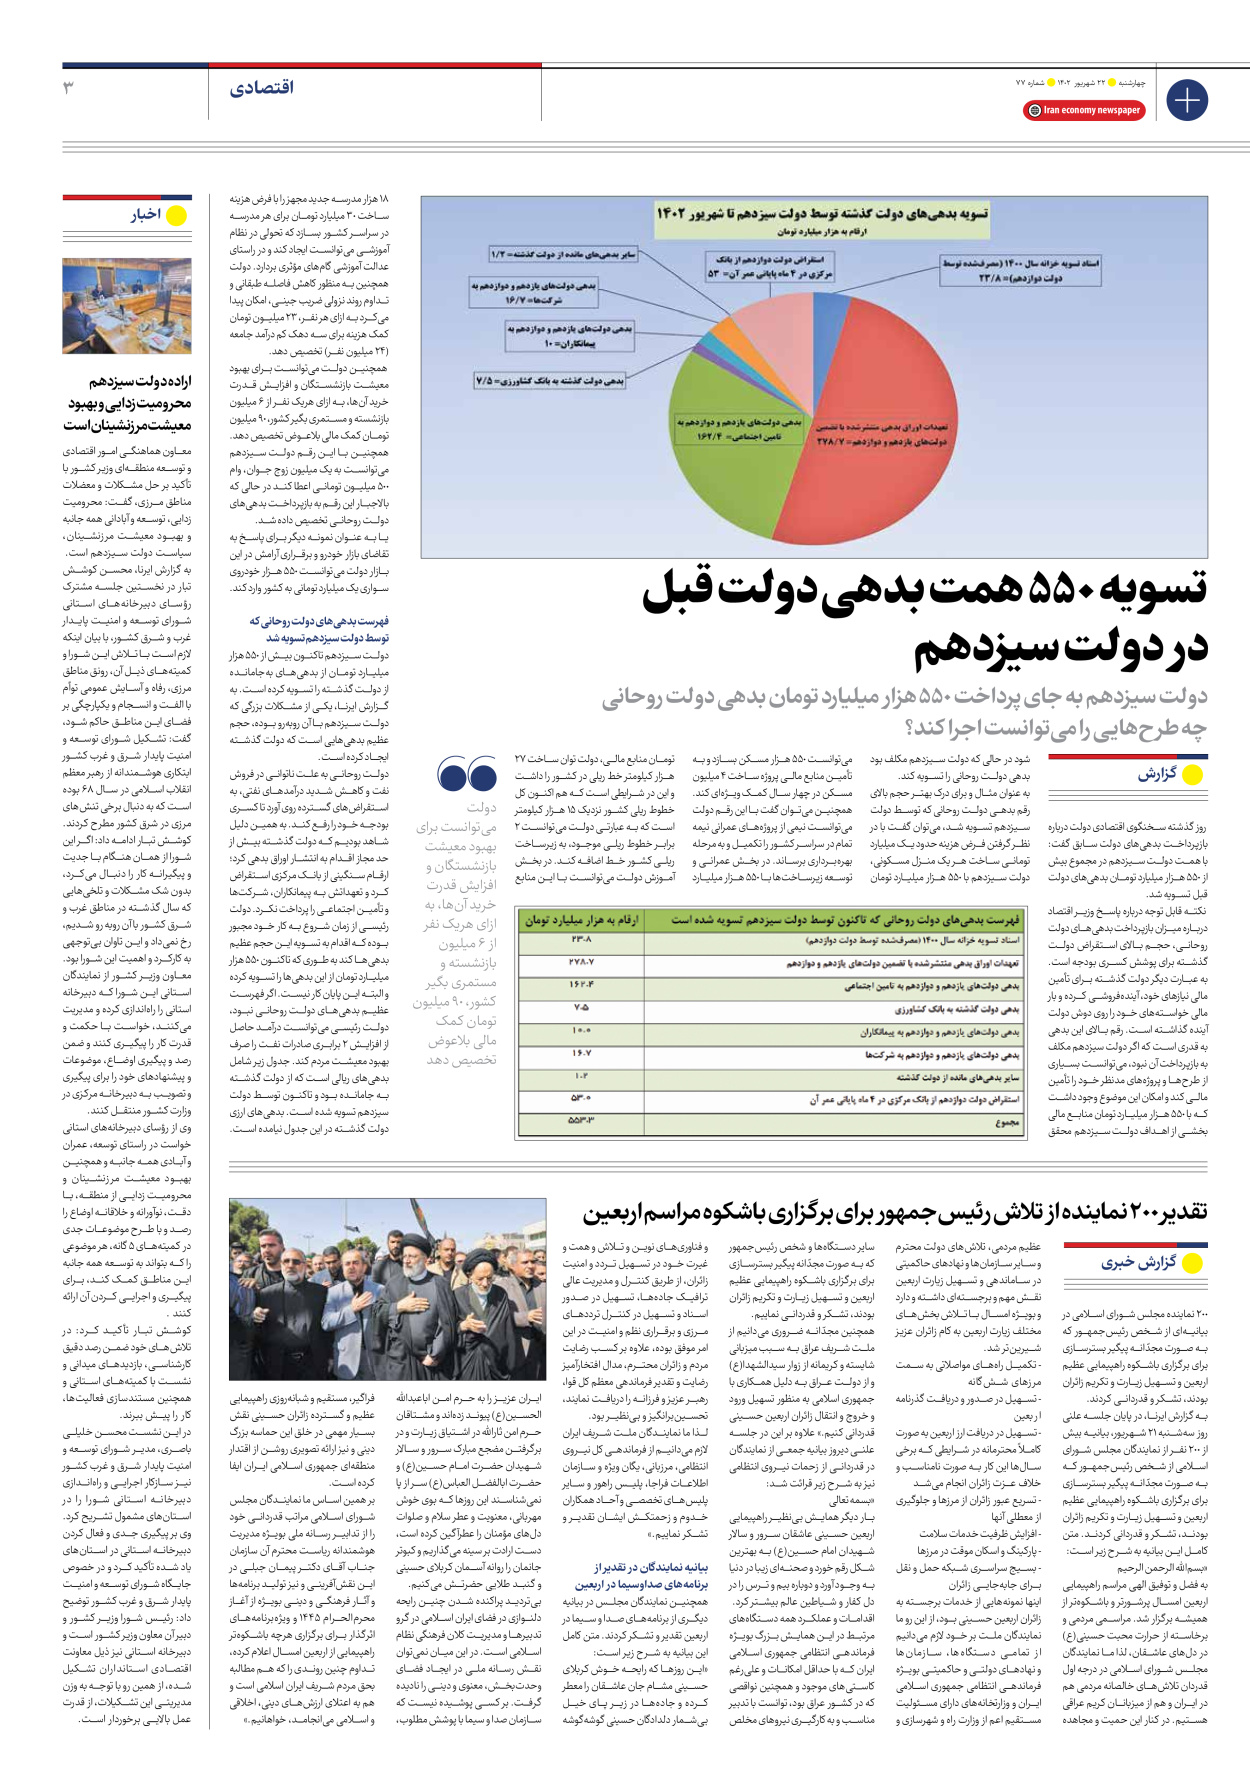 روزنامه ایران اقتصادی - شماره هفتاد و هفت - ۲۲ شهریور ۱۴۰۲ - صفحه ۳